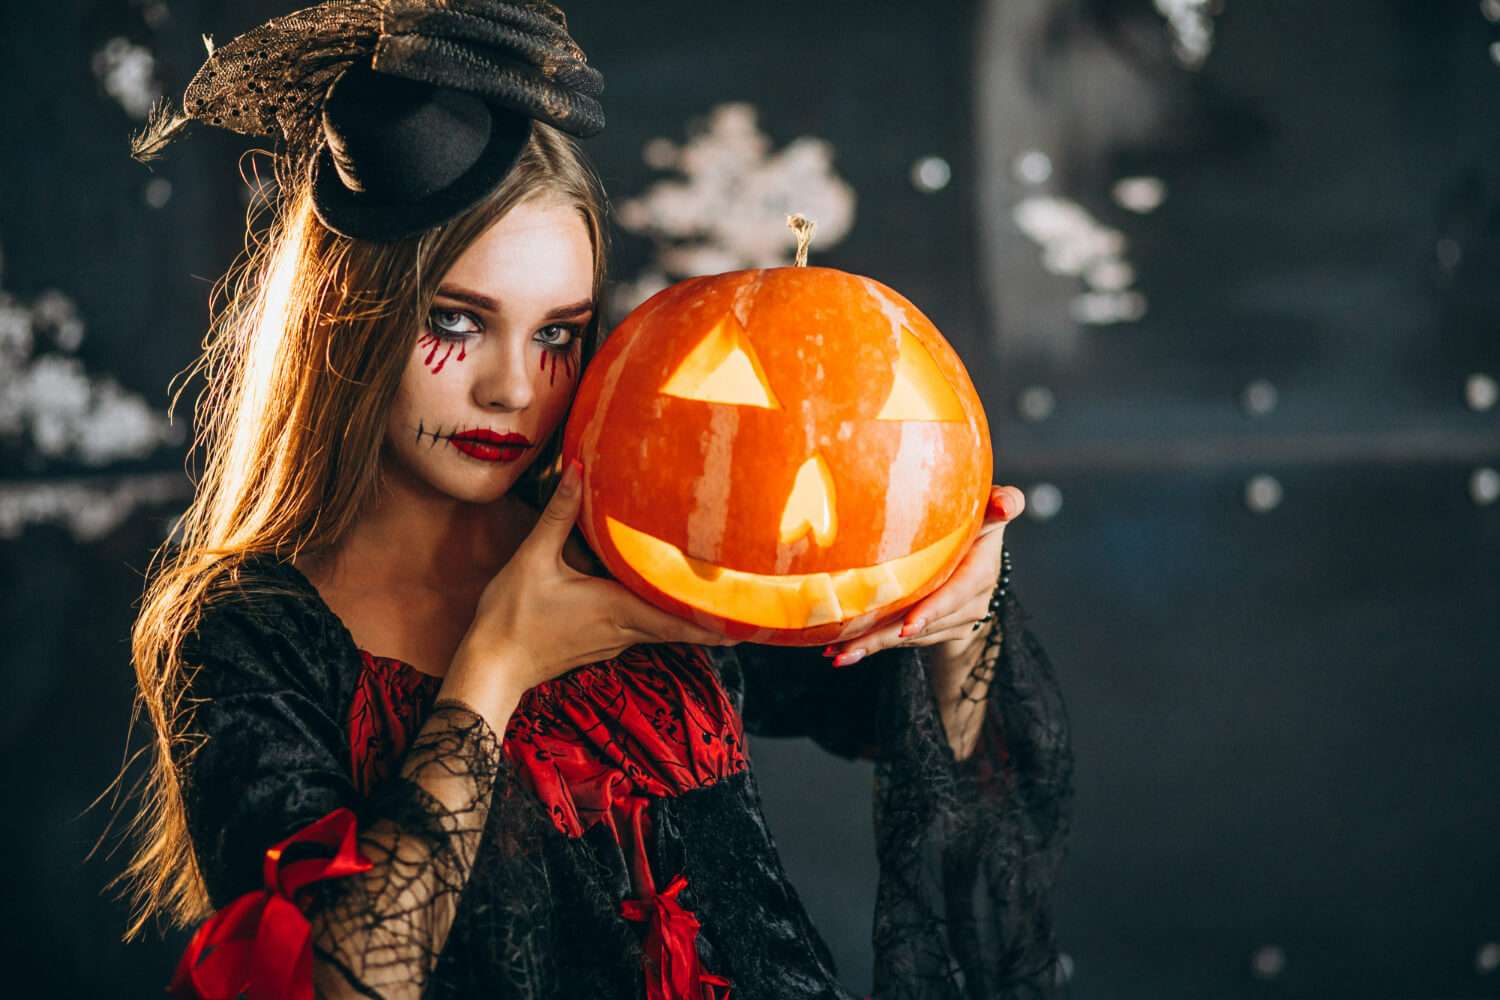 Dia das Bruxas – Halloween